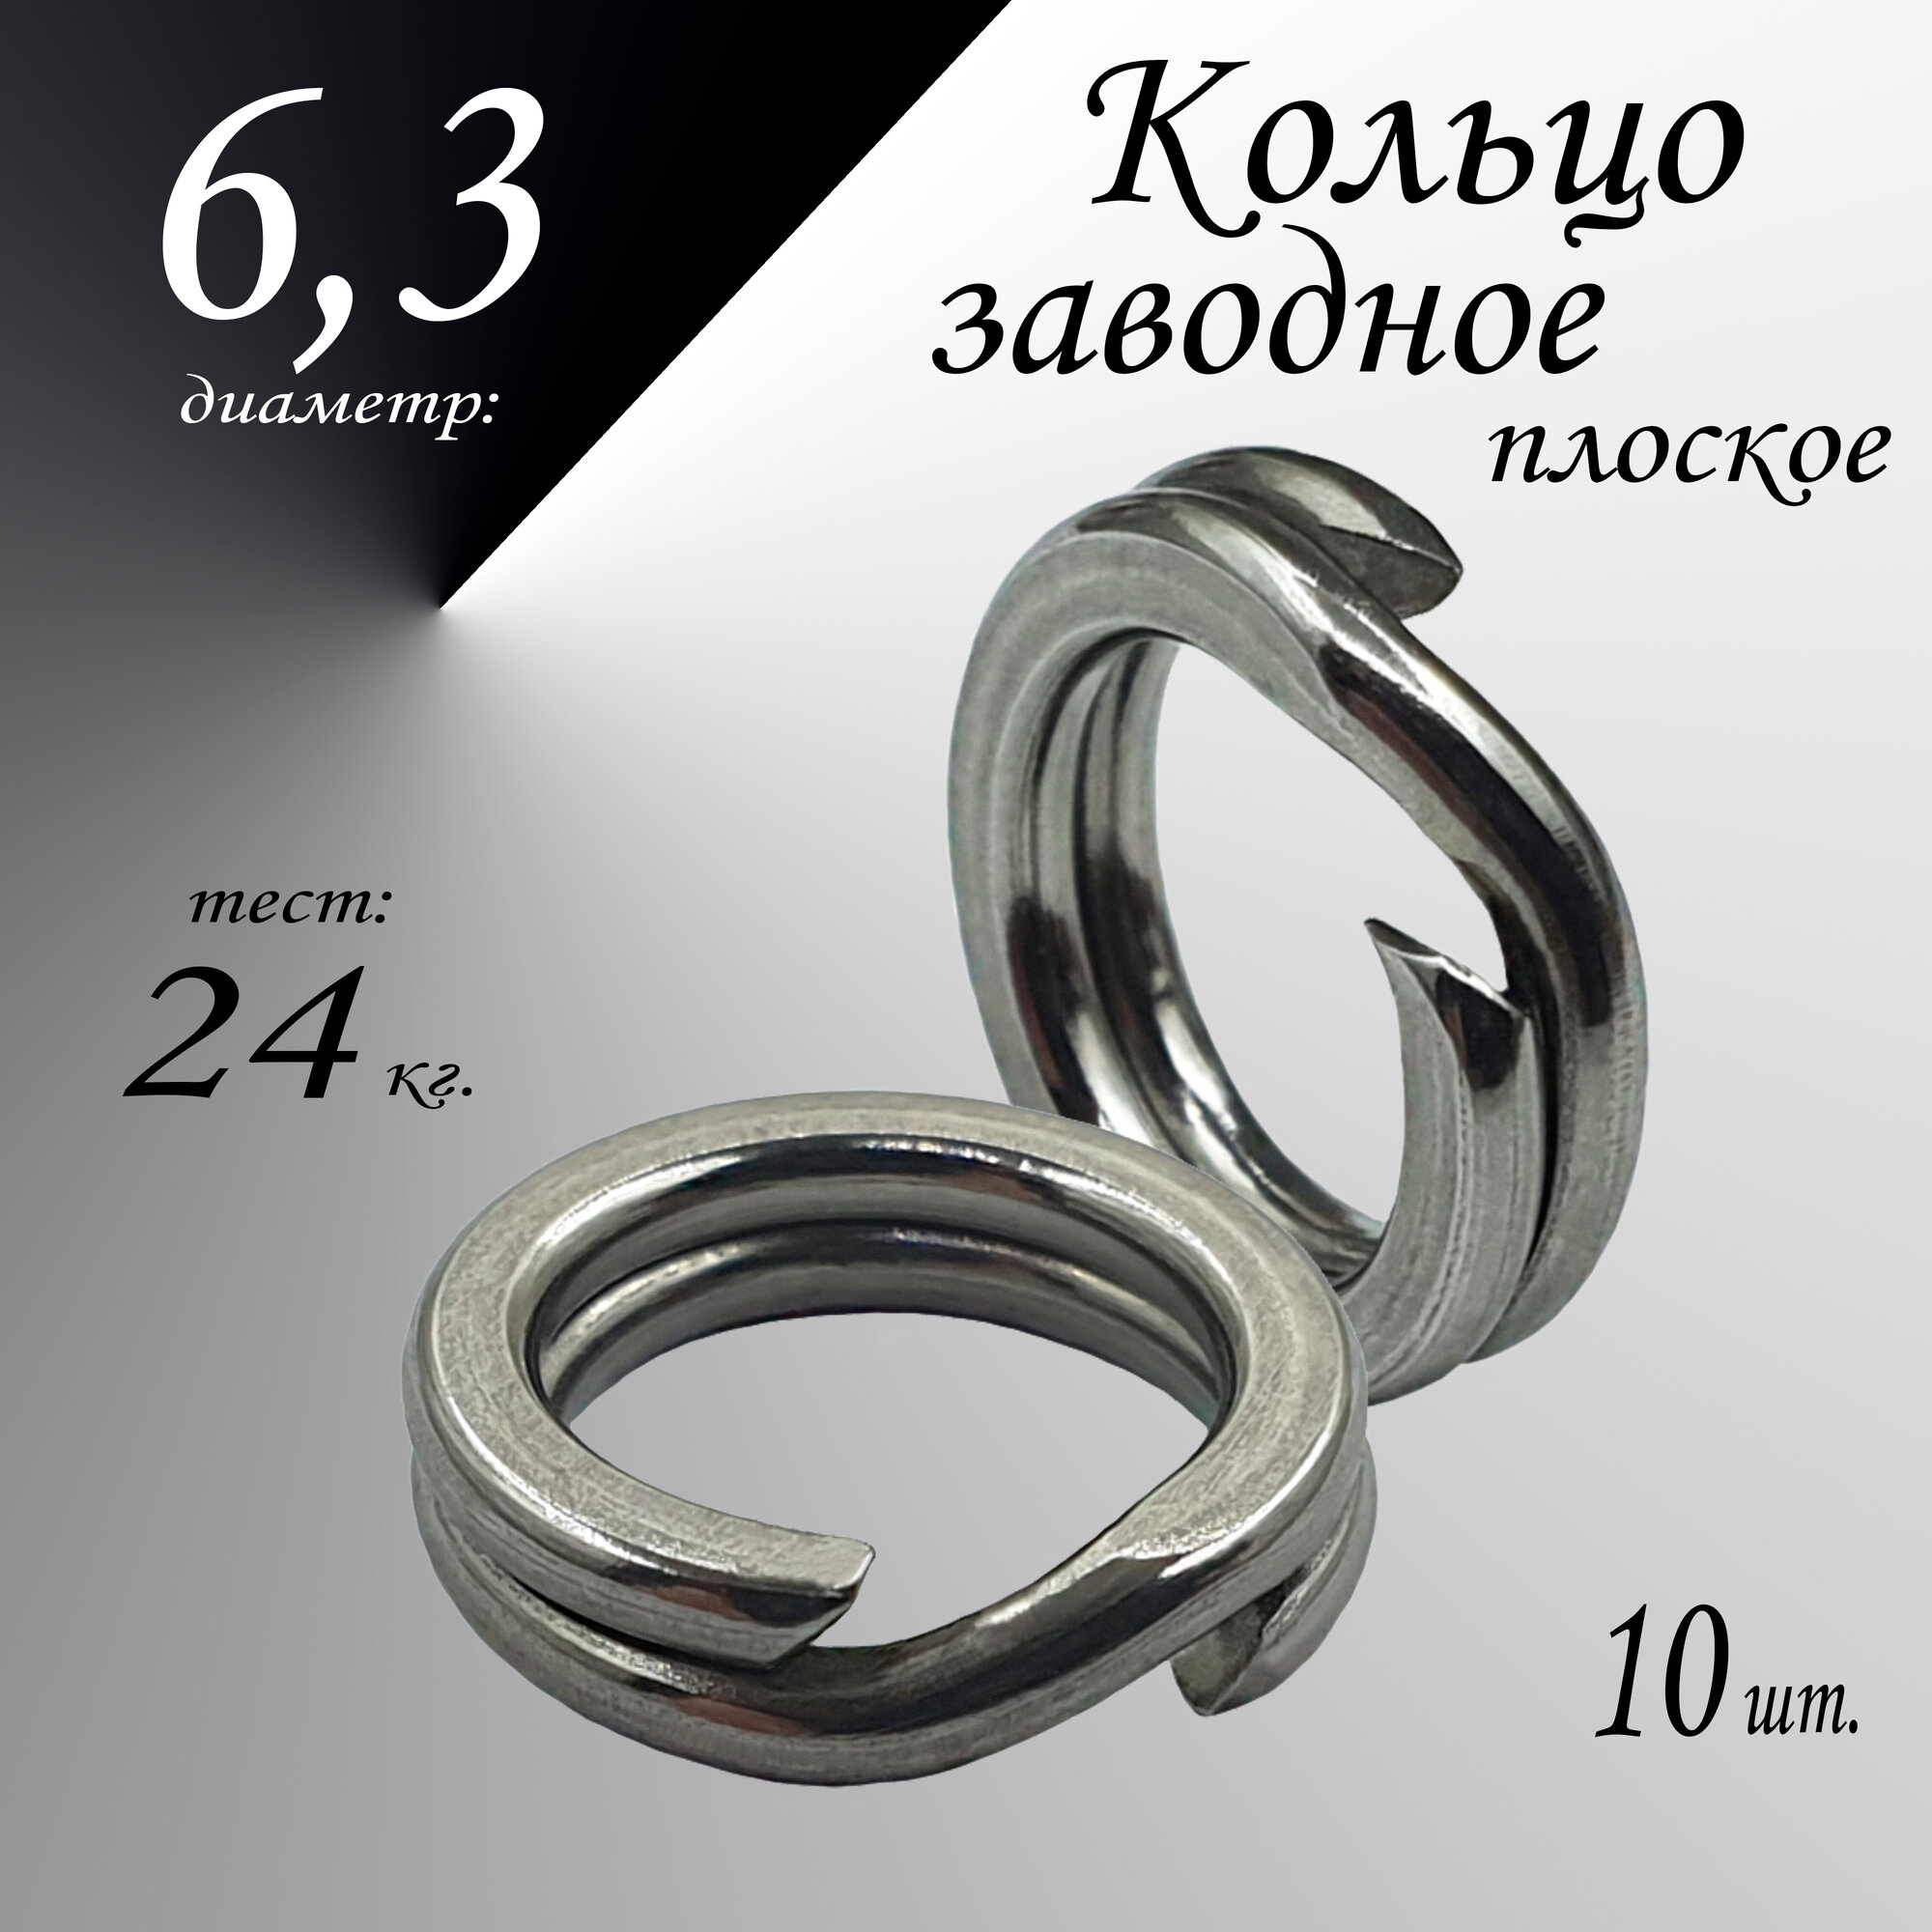 Заводное кольцо, плоское, диам-6,3 мм, тест 24 кг, (в уп. 10 шт.)